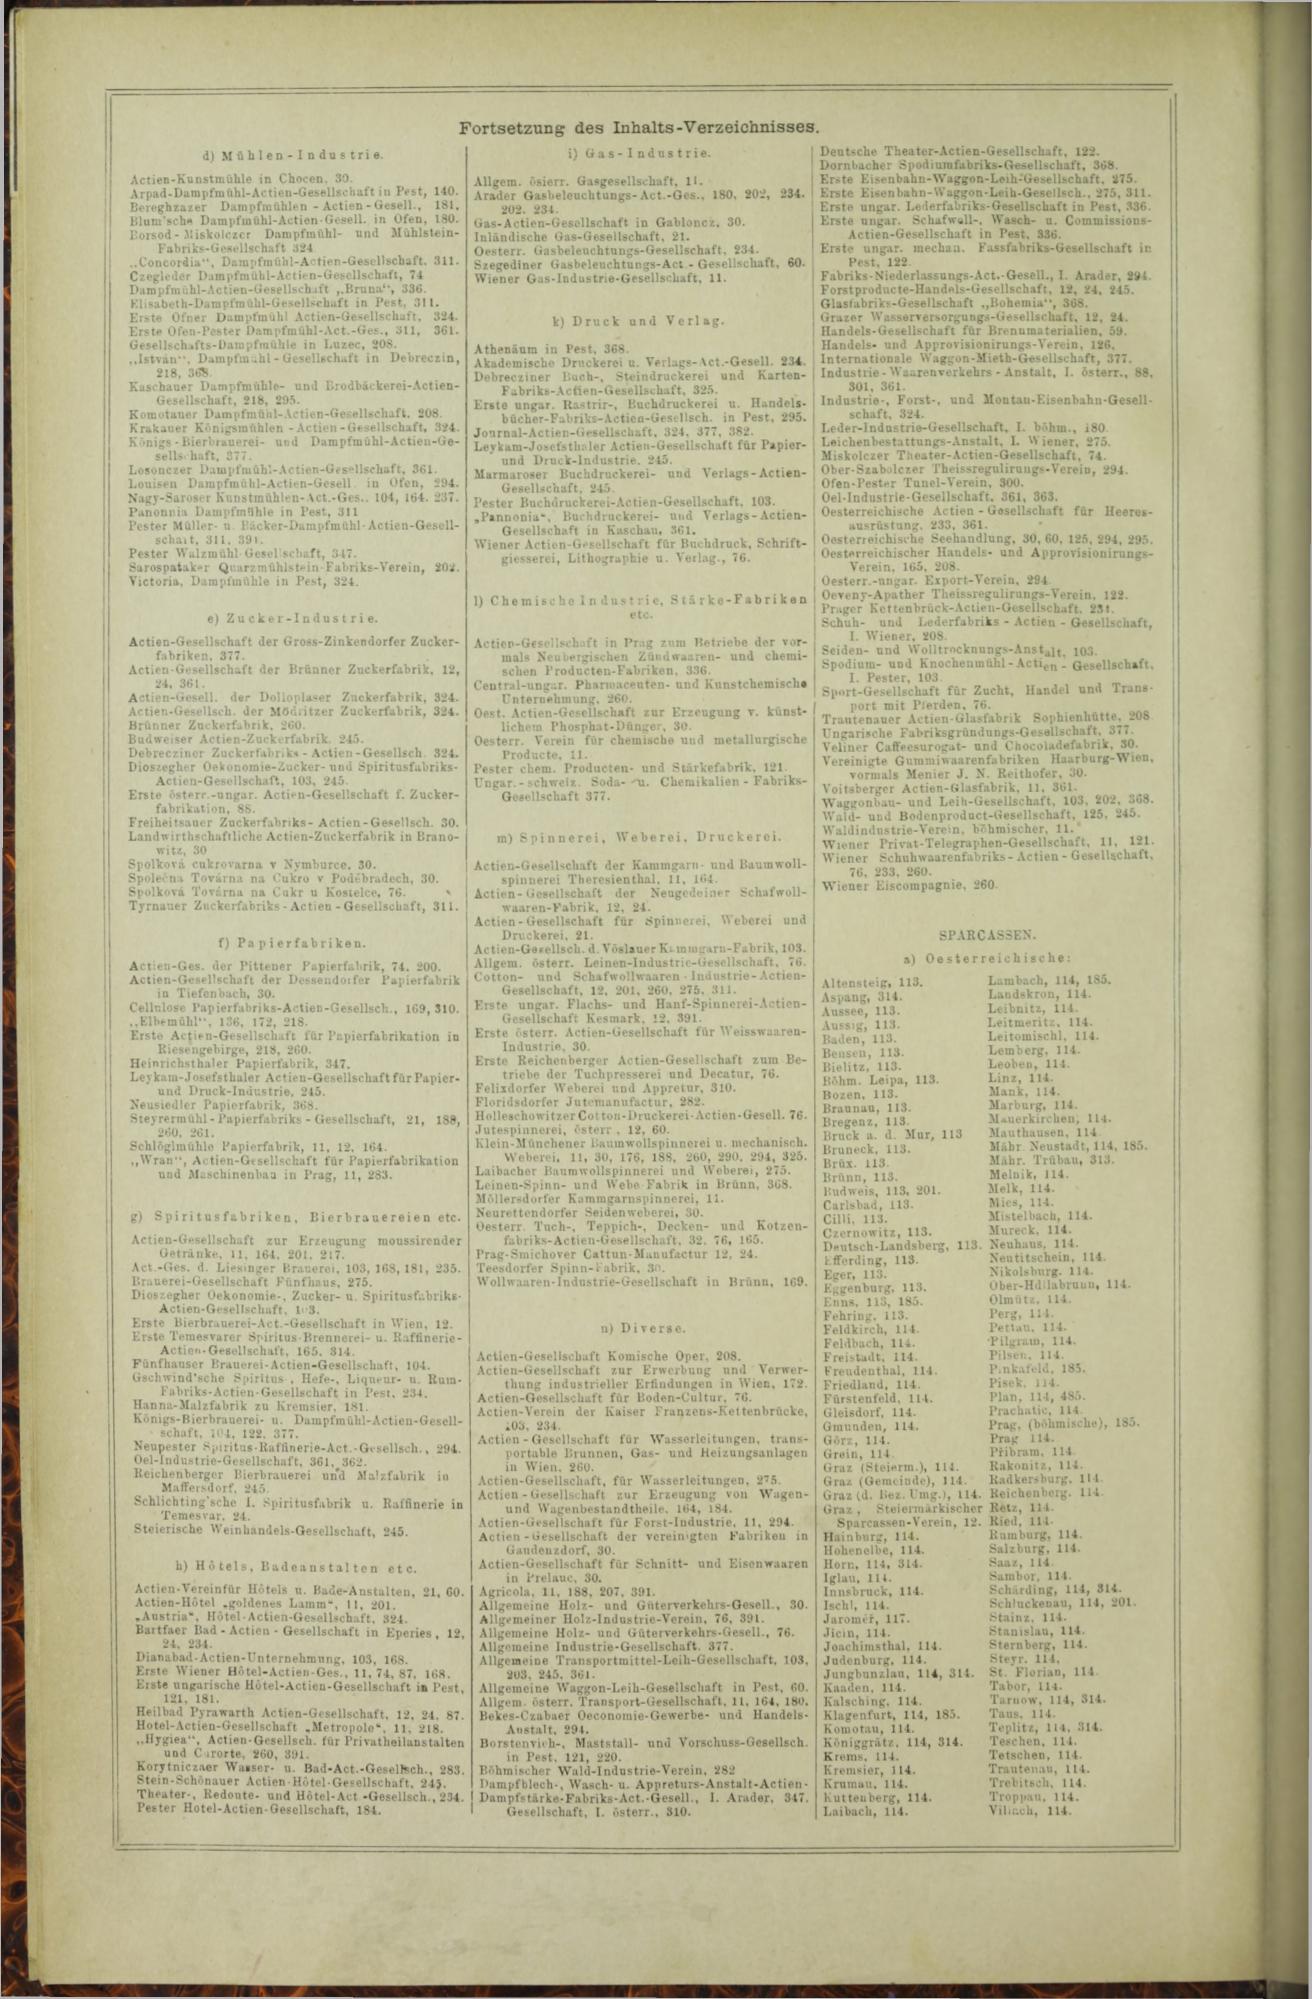 Der Tresor 23.04.1873 - Seite 18